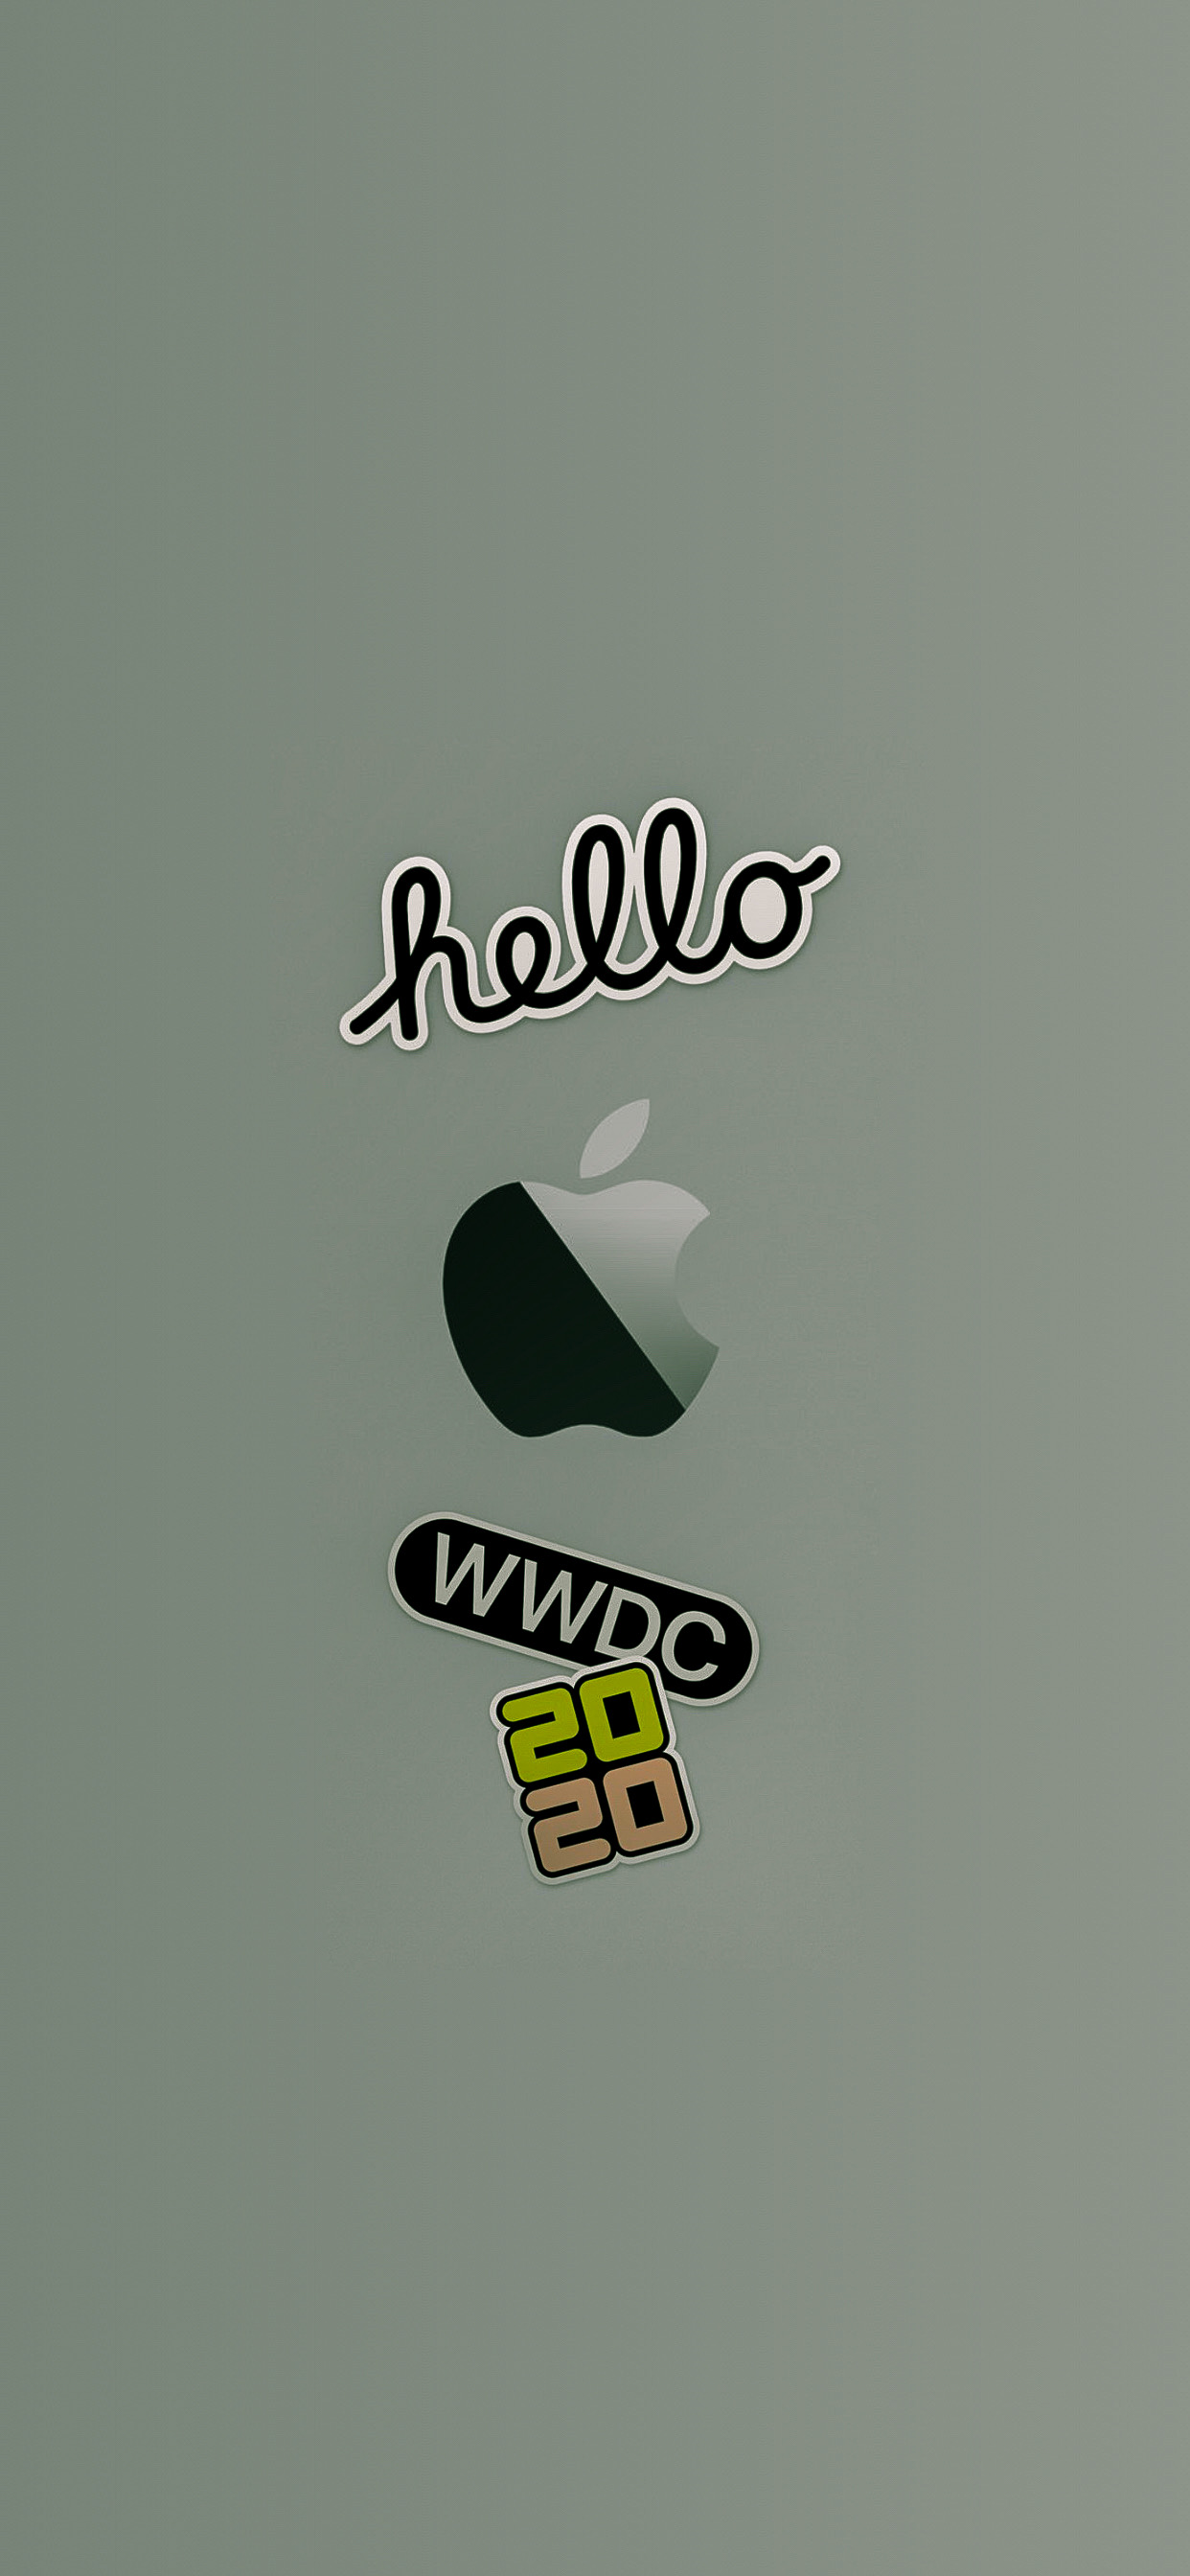 wwdc 2020 fond d'écran iphone ar72014 idownloadblog Logos vert minuit